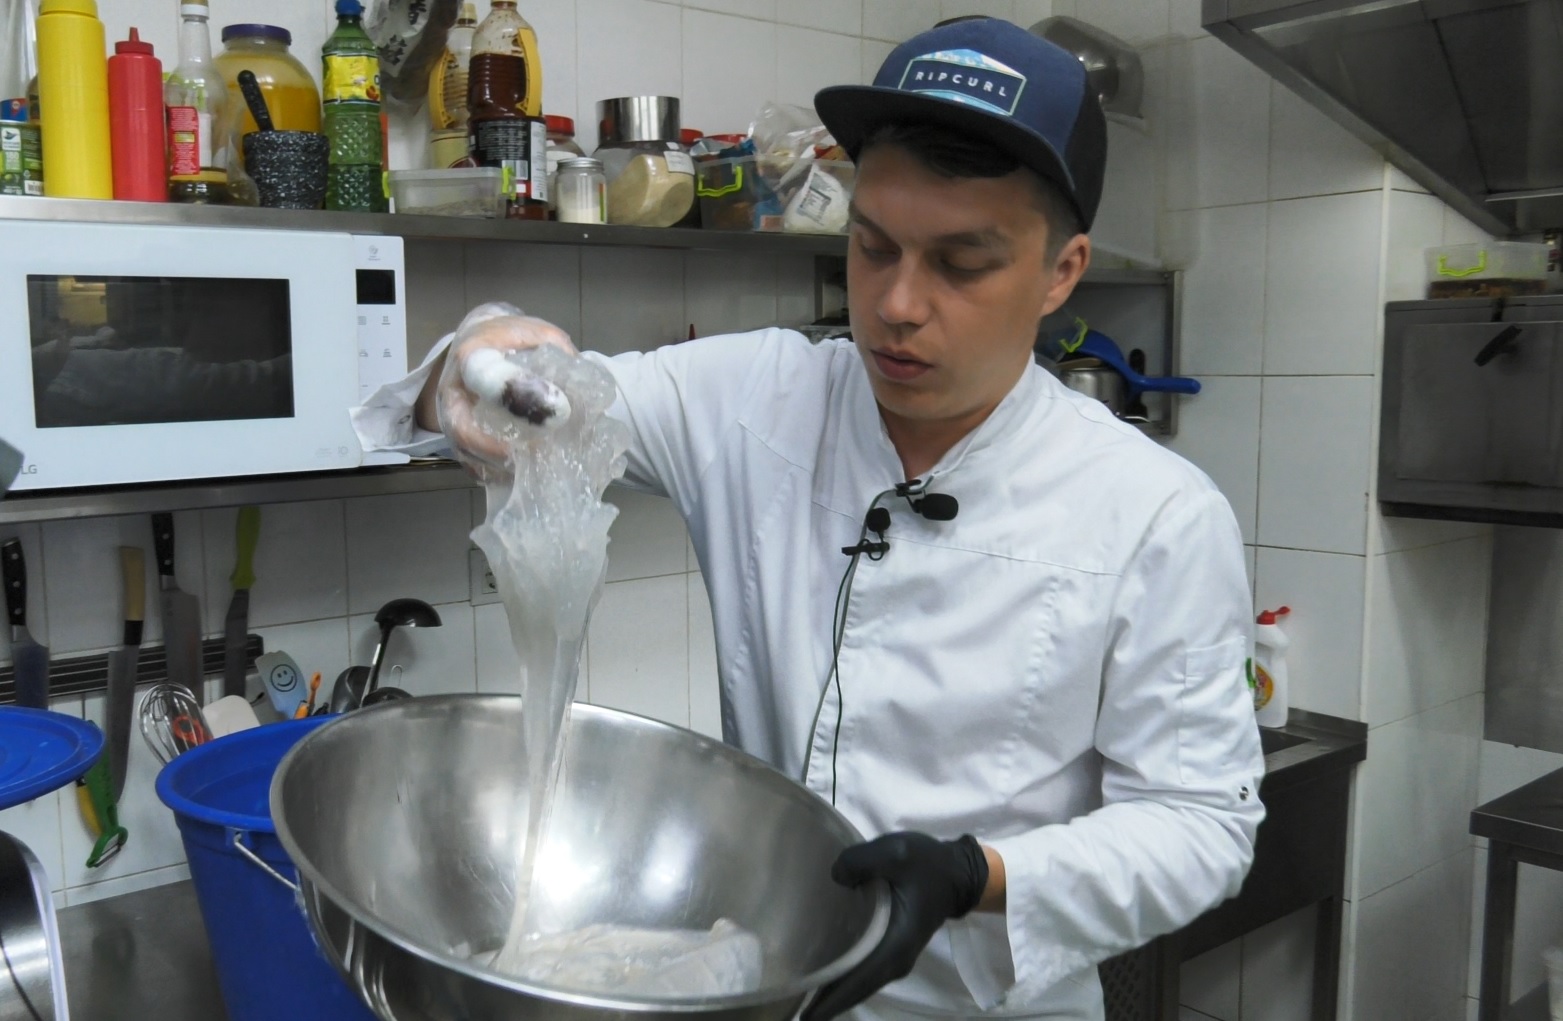 На курортах Азовського моря почали готувати і їсти медуз: фото і рецепт смакоти